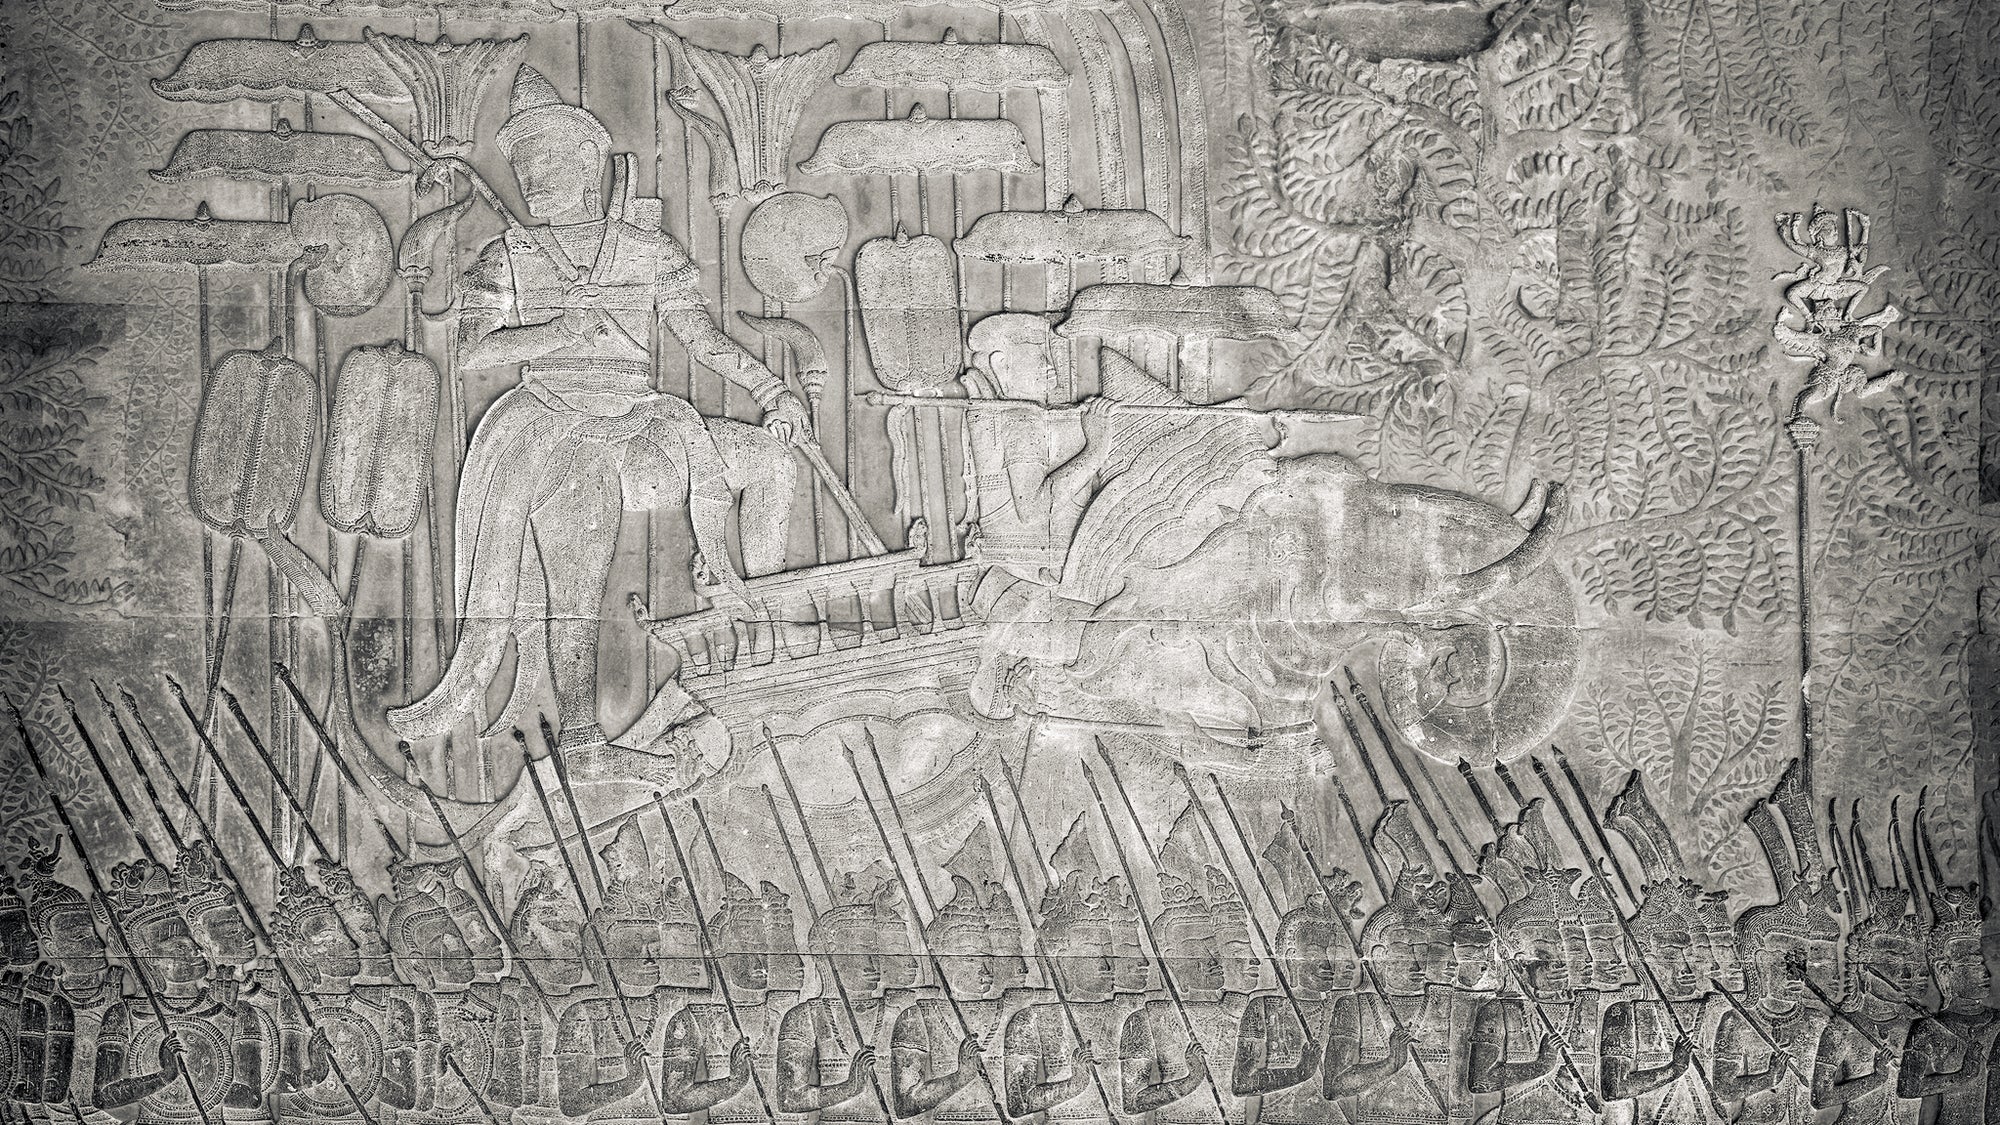 Chronology of Angkor Kings